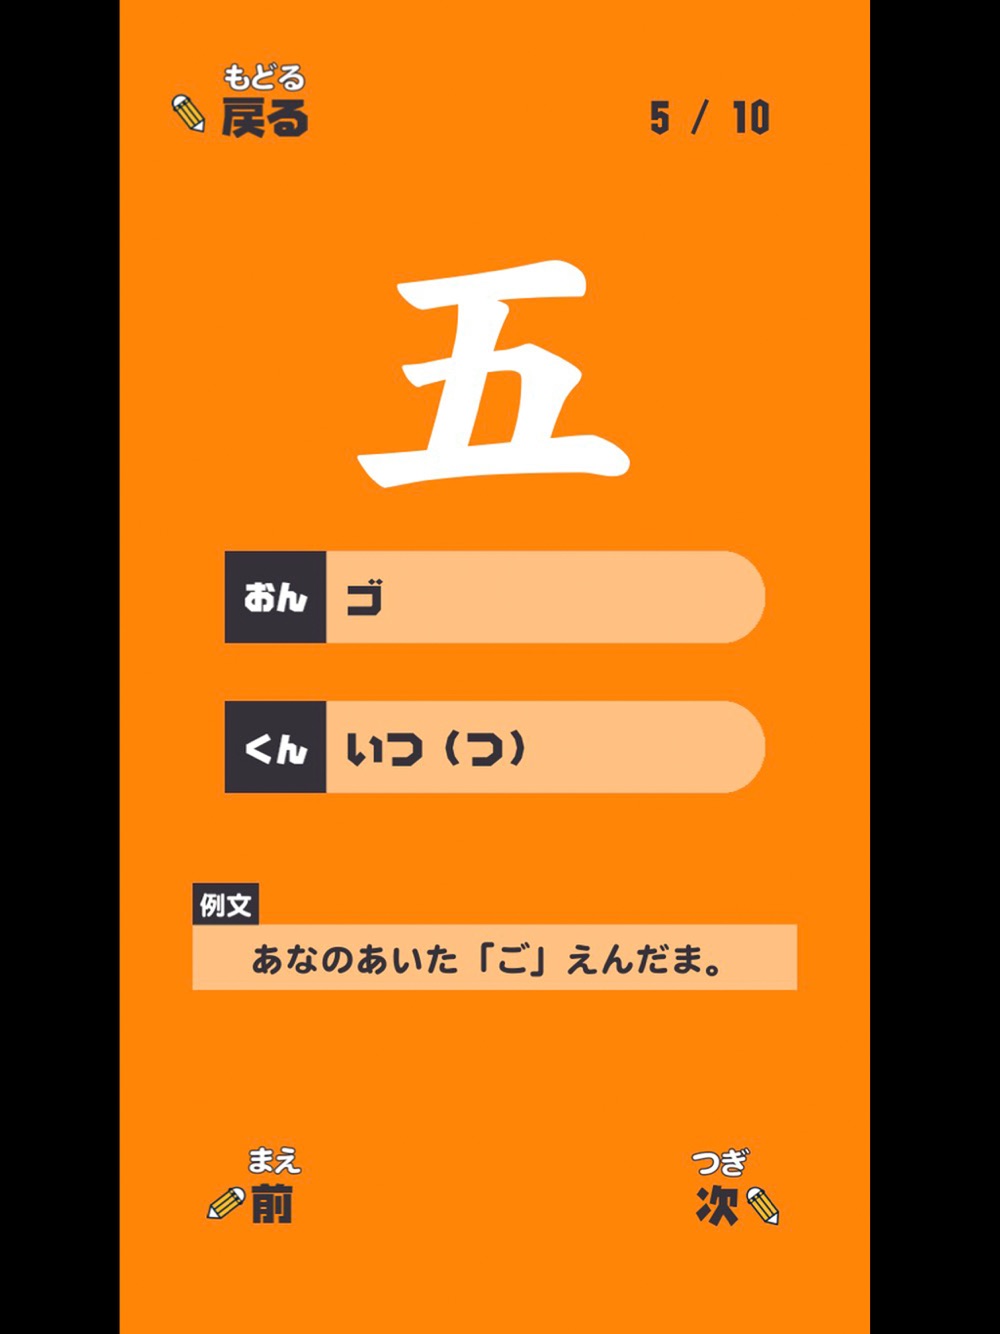 いちねんせいの漢字 小学一年生 小1 向け漢字勉強アプリ Free Download App For Iphone Steprimo Com